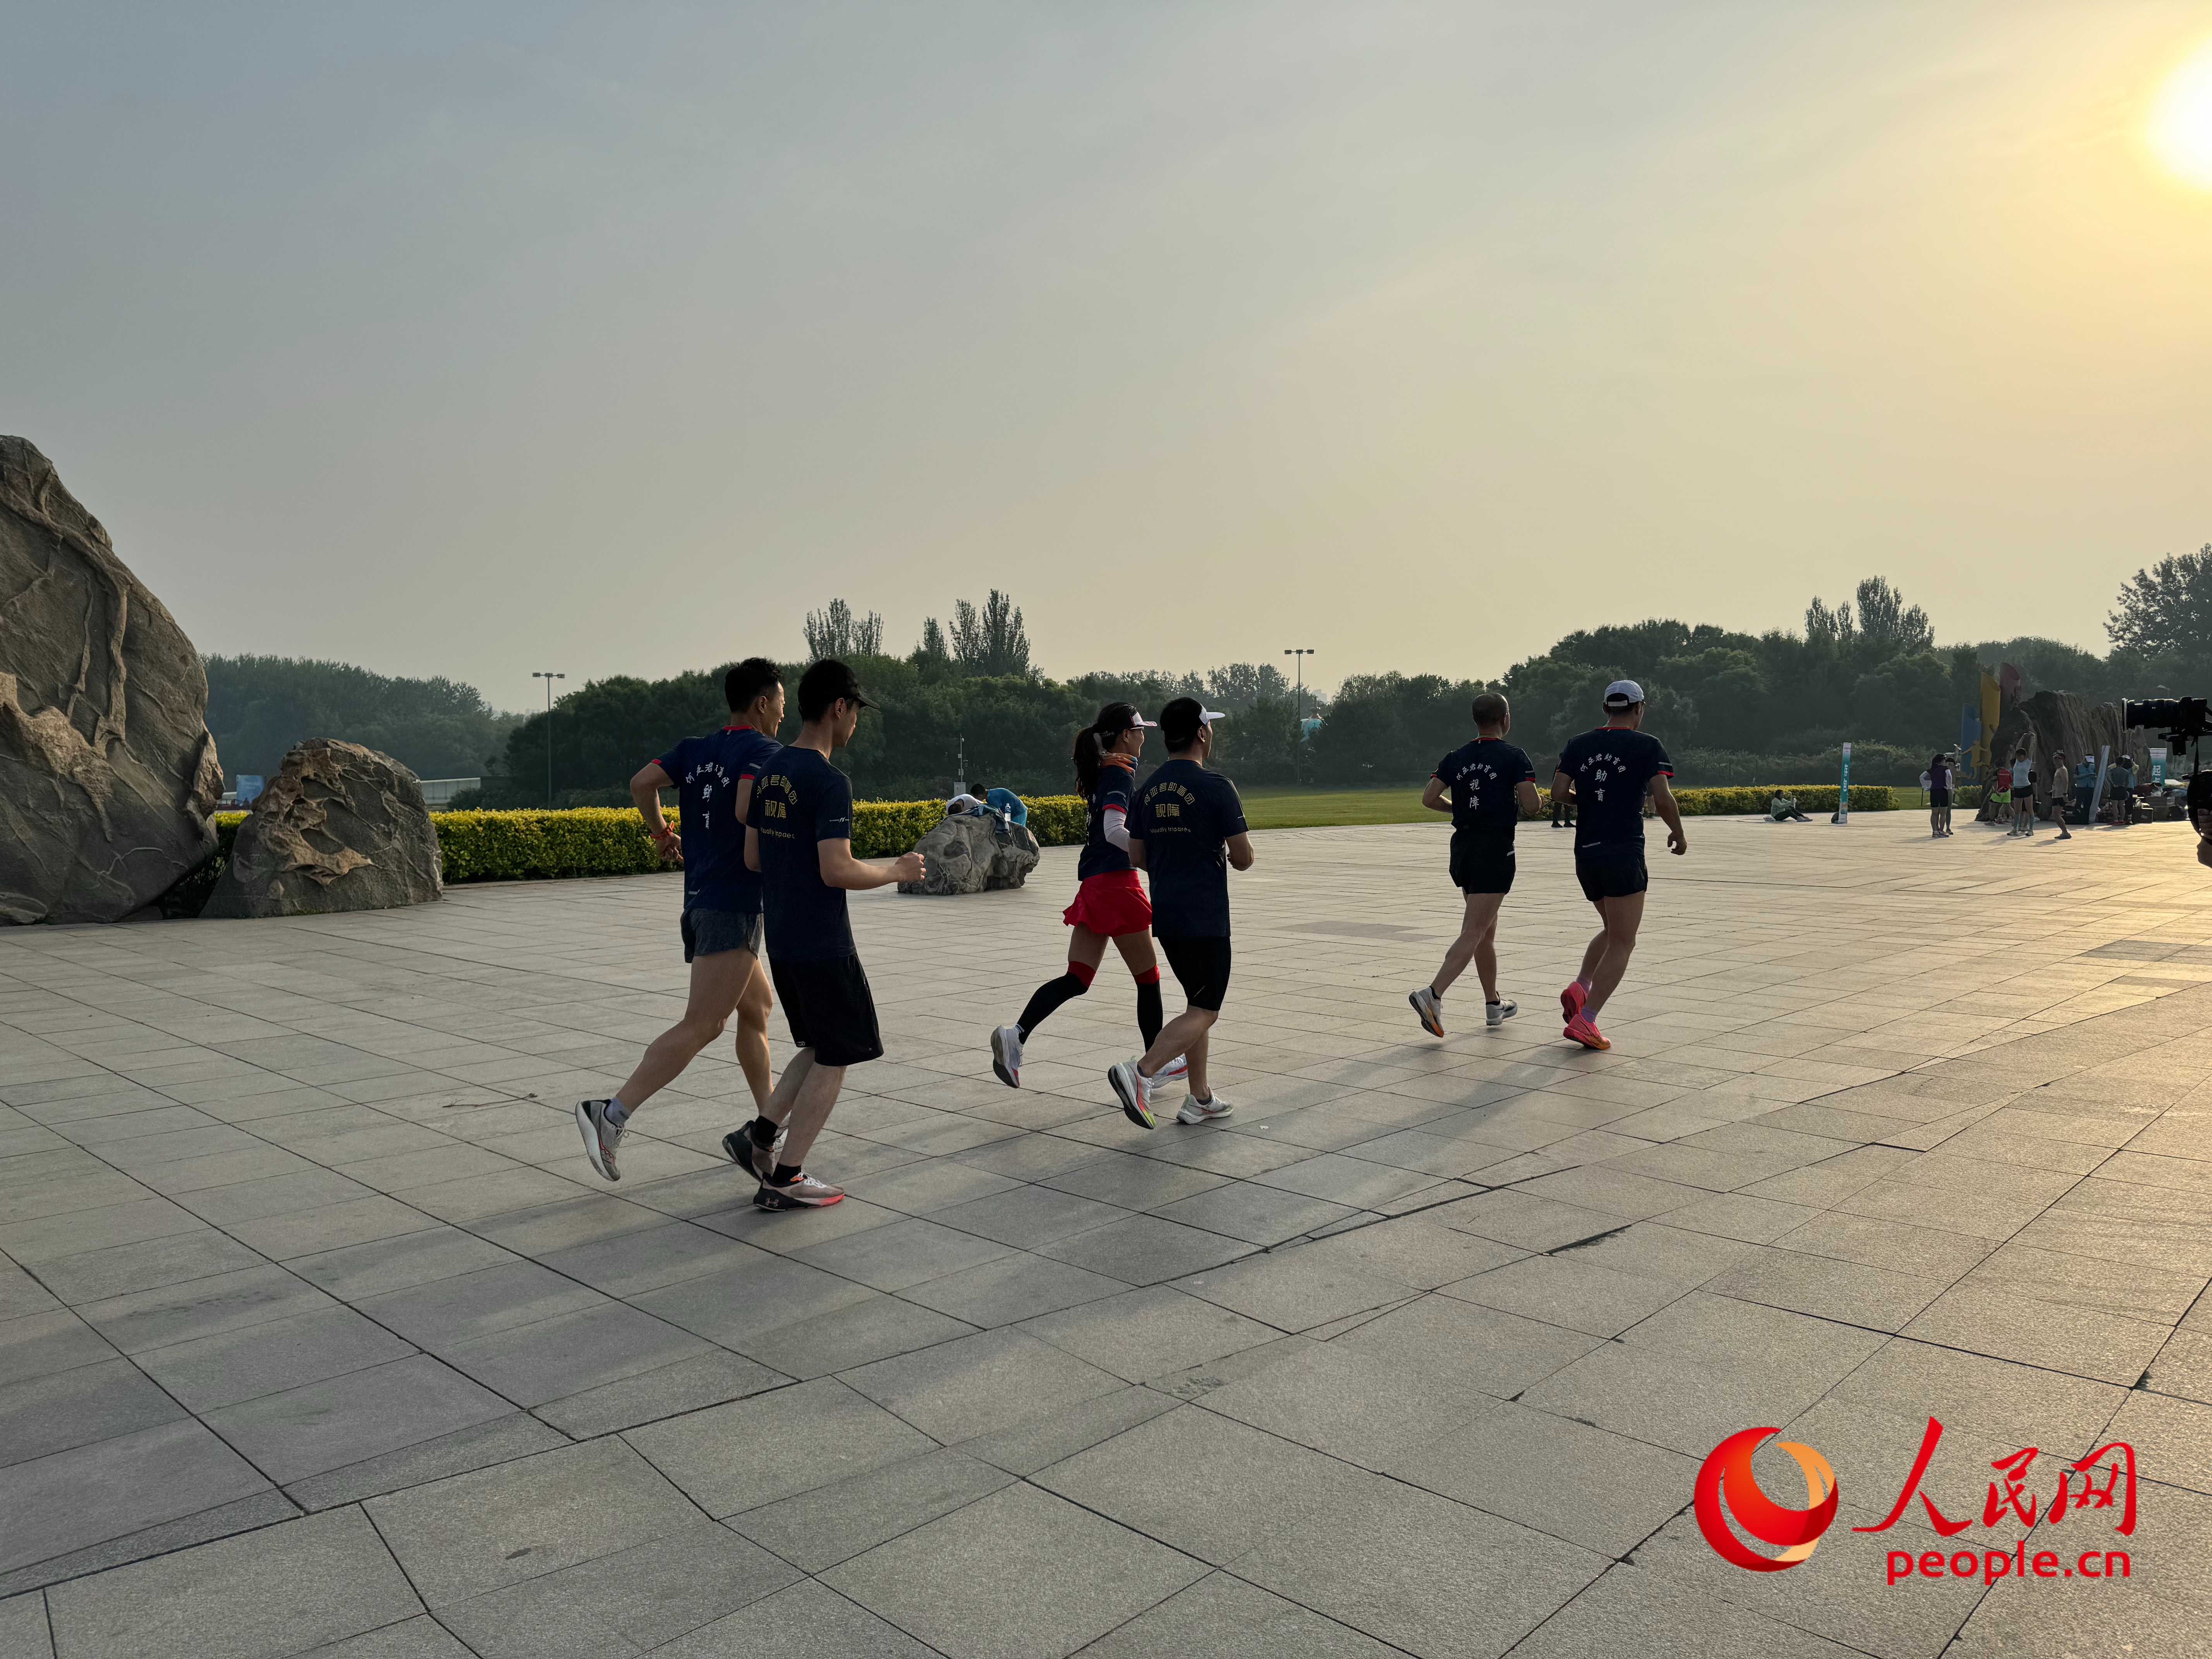 北京オリンピック森林公園では、視覚障害者のランナー団が朝日を浴びて走っている。人民網周静円撮影